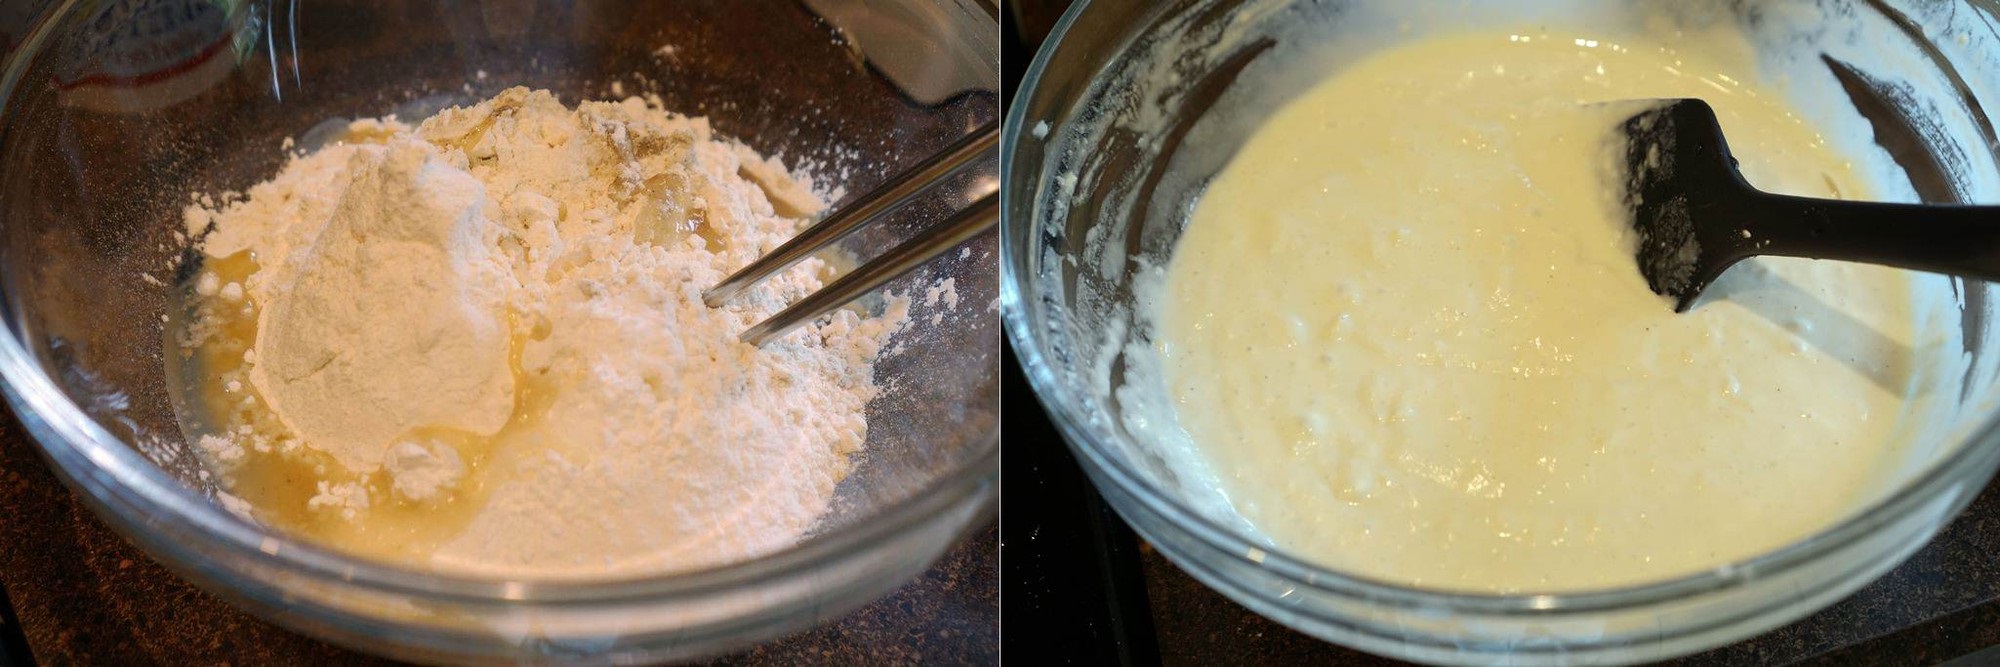 Mách bạn cách làm bánh tôm chiên chuẩn ngon - Ảnh 1